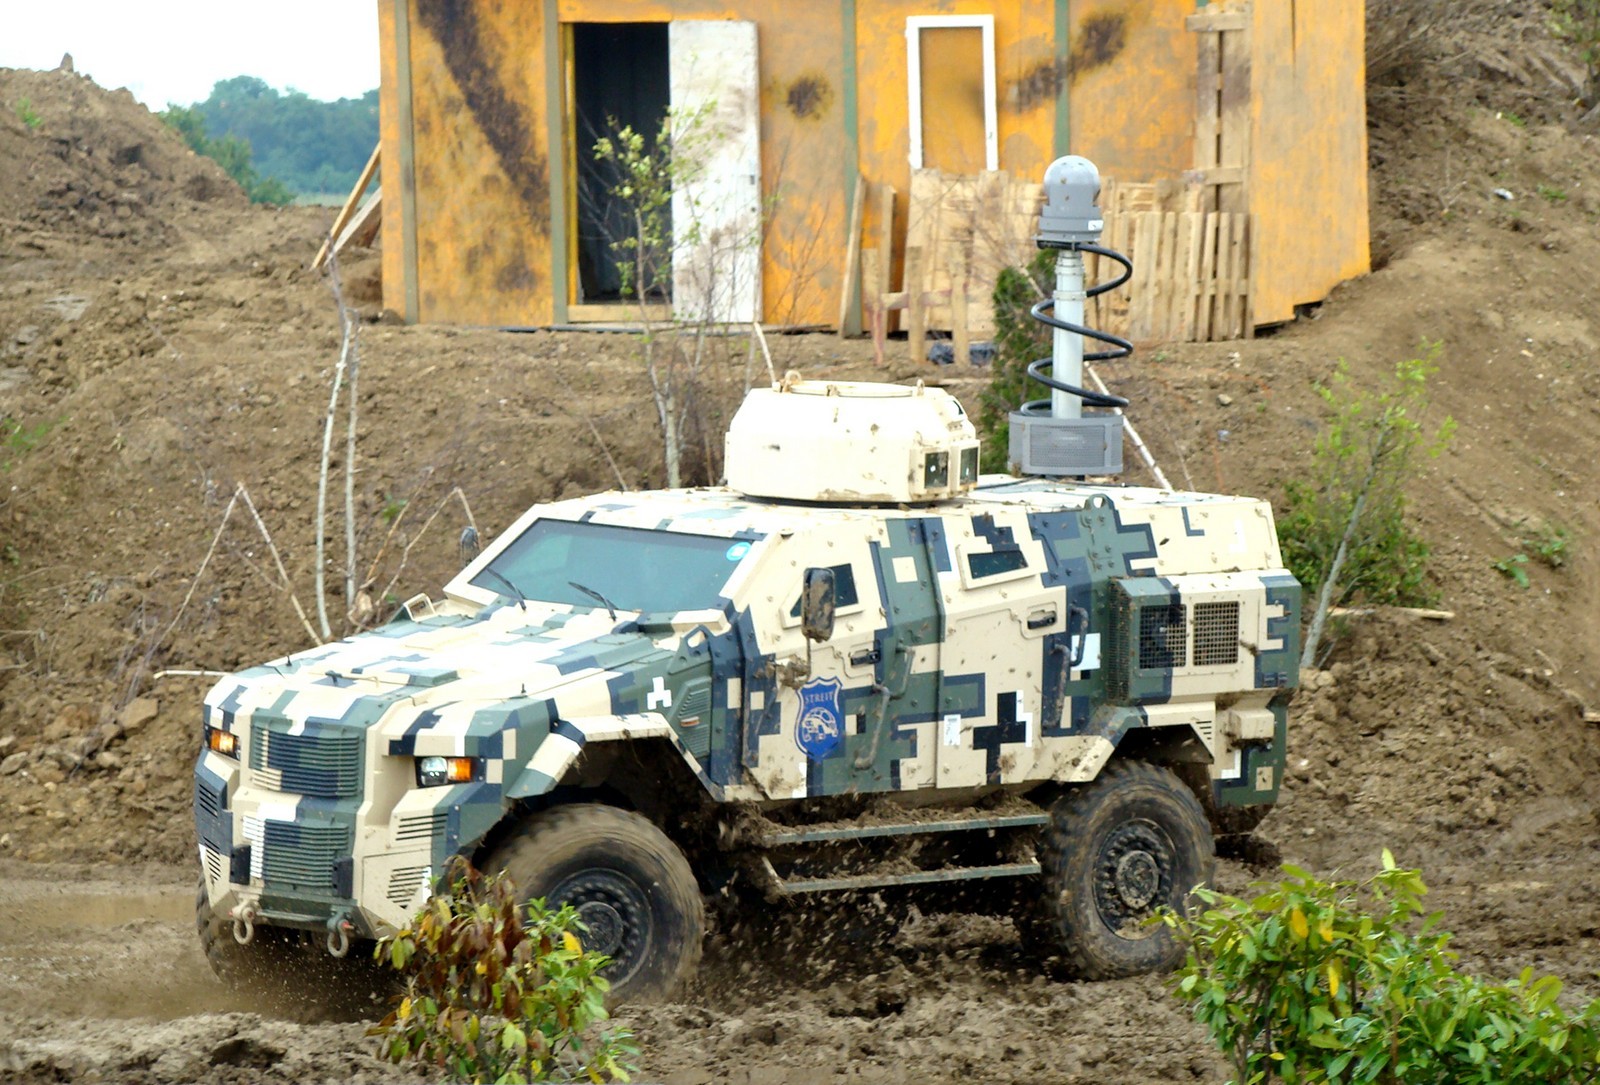 Машина Streit Scorpion AFV, первой получившая защитную систему MRAP